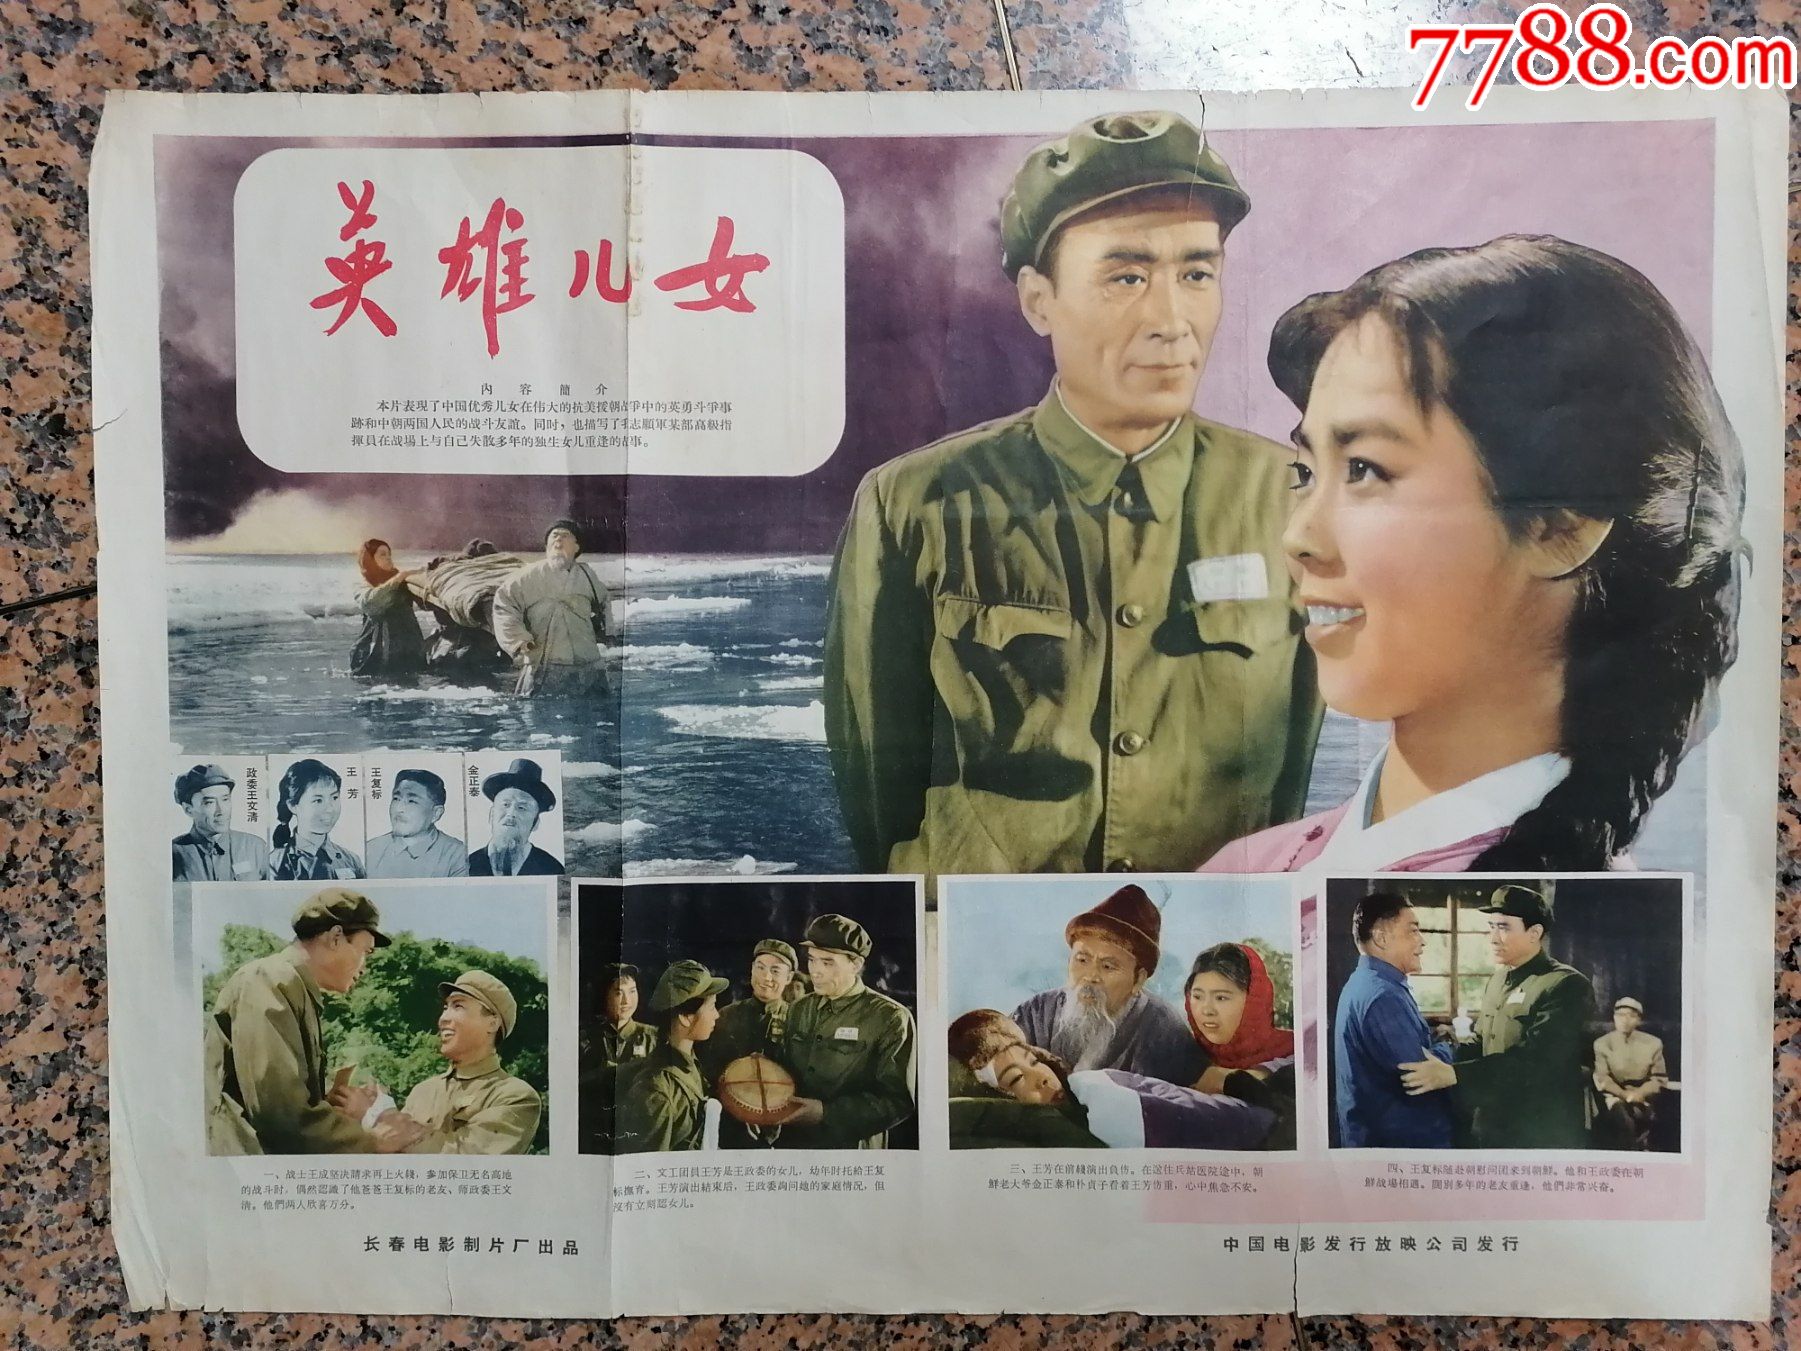 英雄儿女,1963年北京电影制片厂,中国电影发行放映公司,2